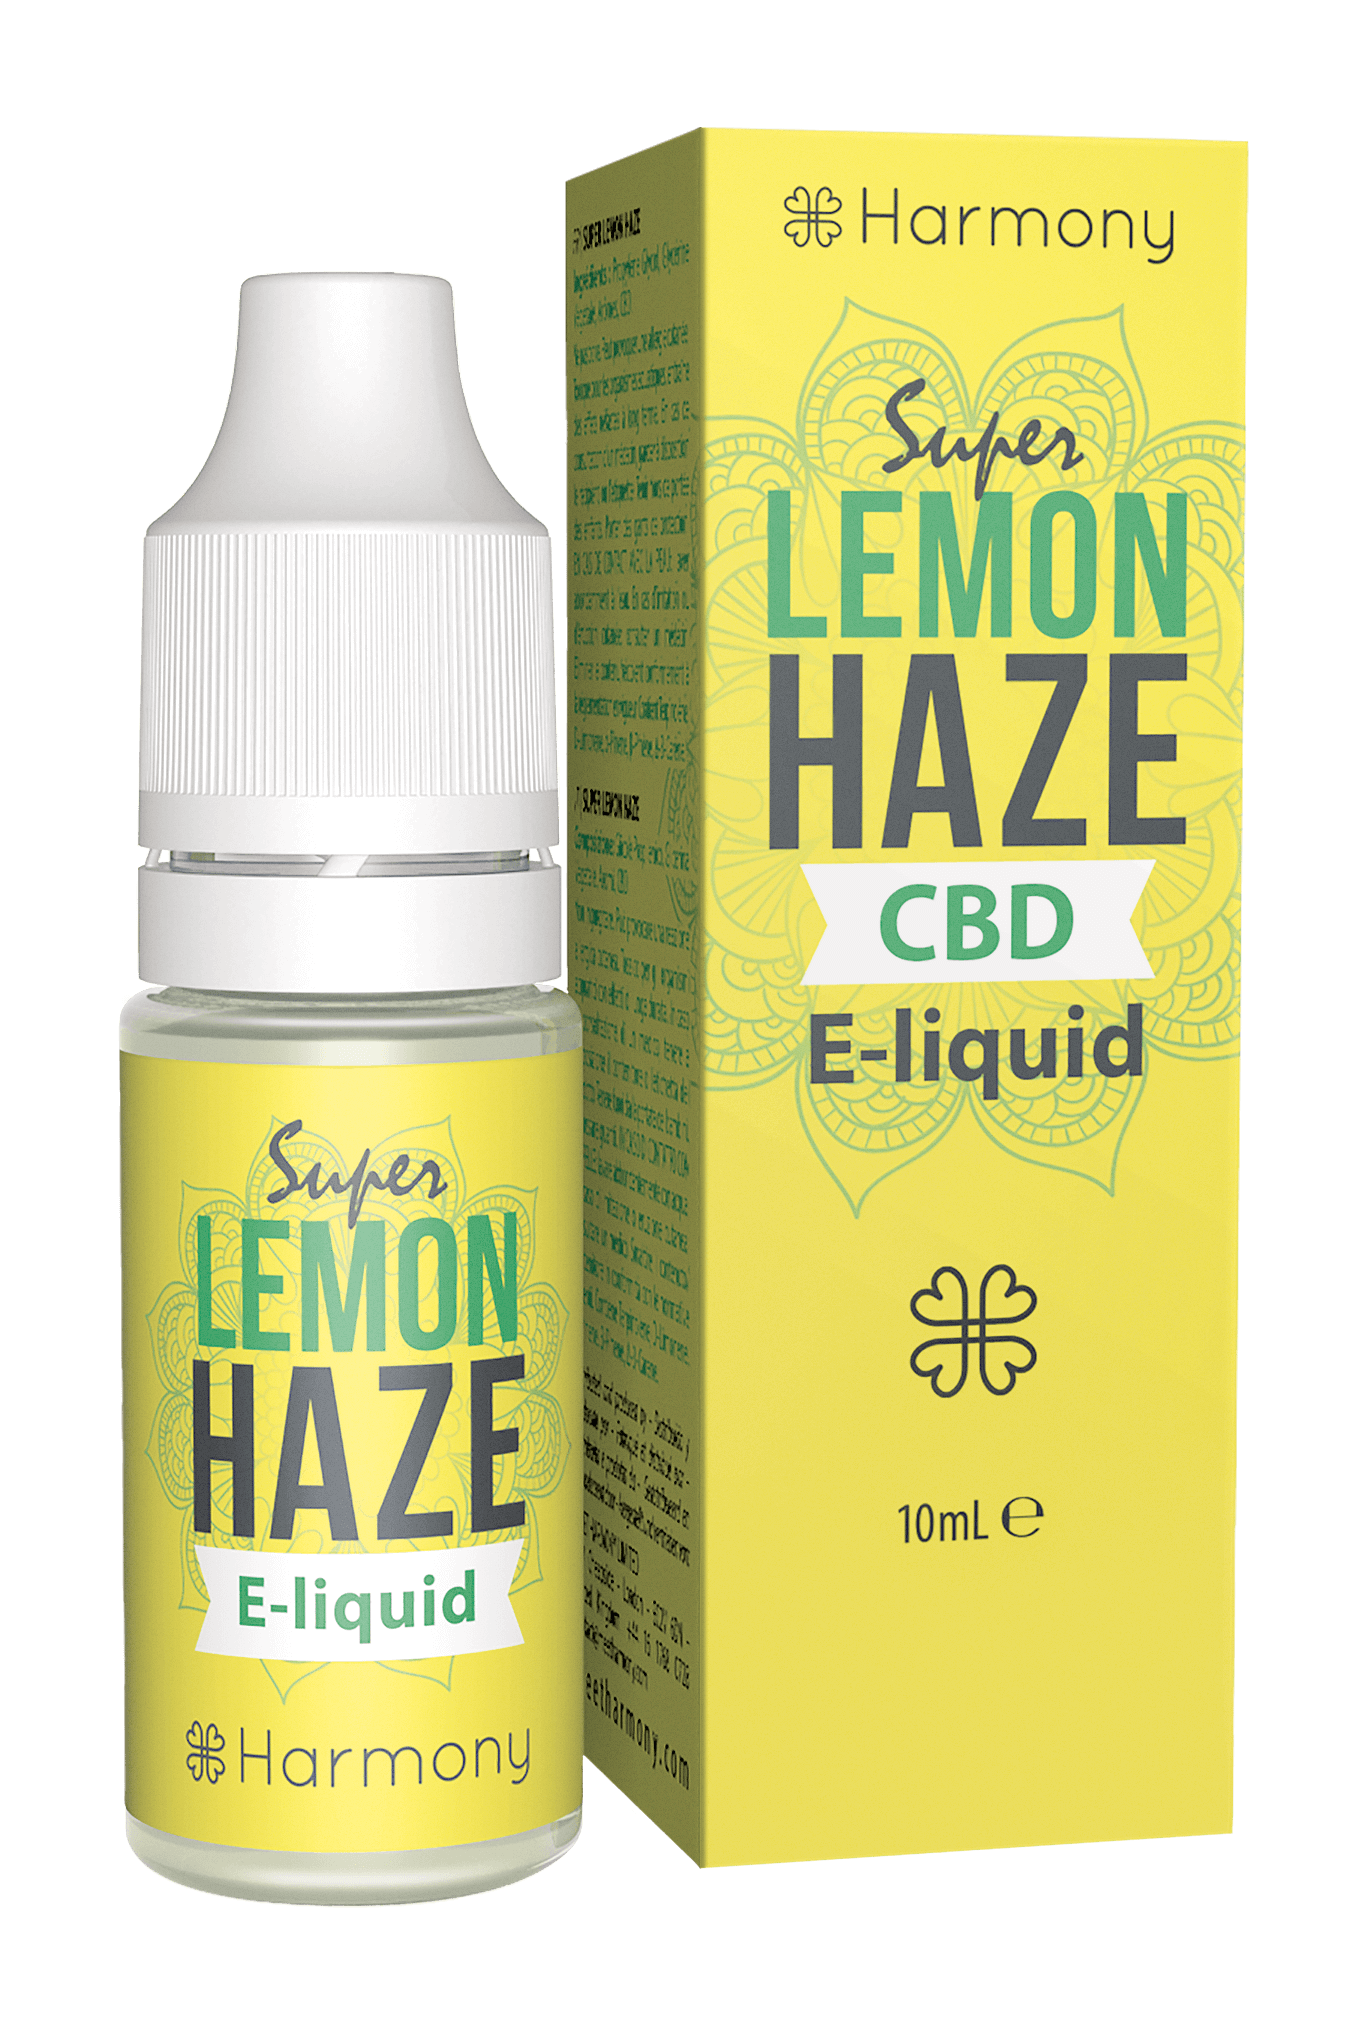 Lemon Haze E-liquid 10ml - 300mg